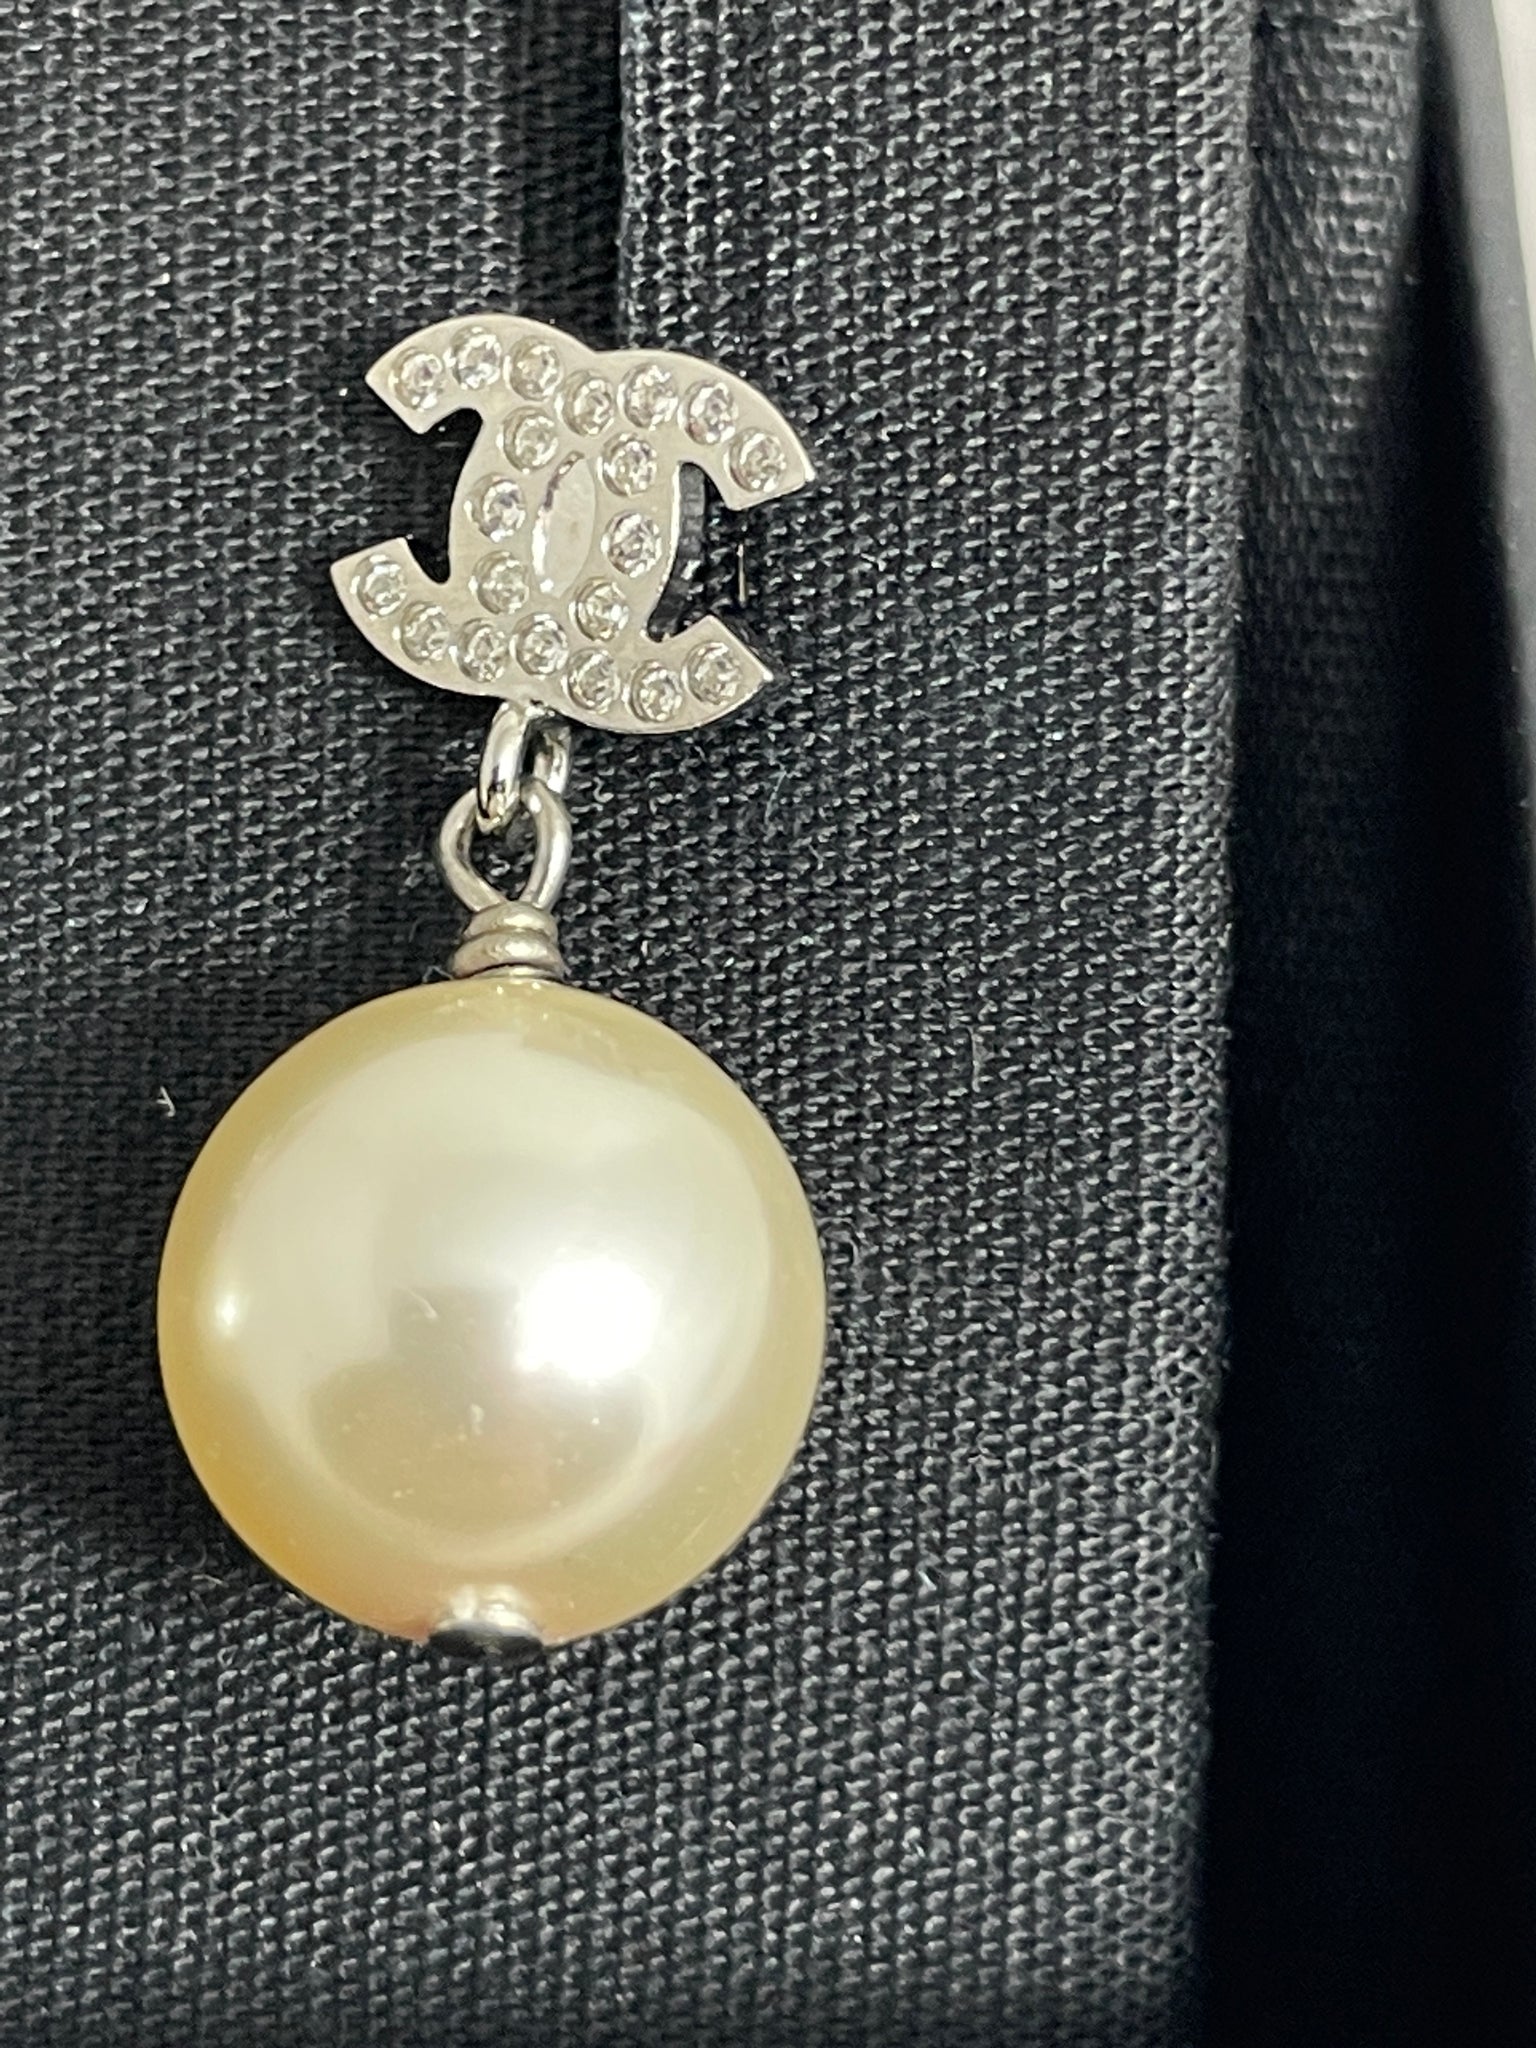 chanel pearl drop earrings gold